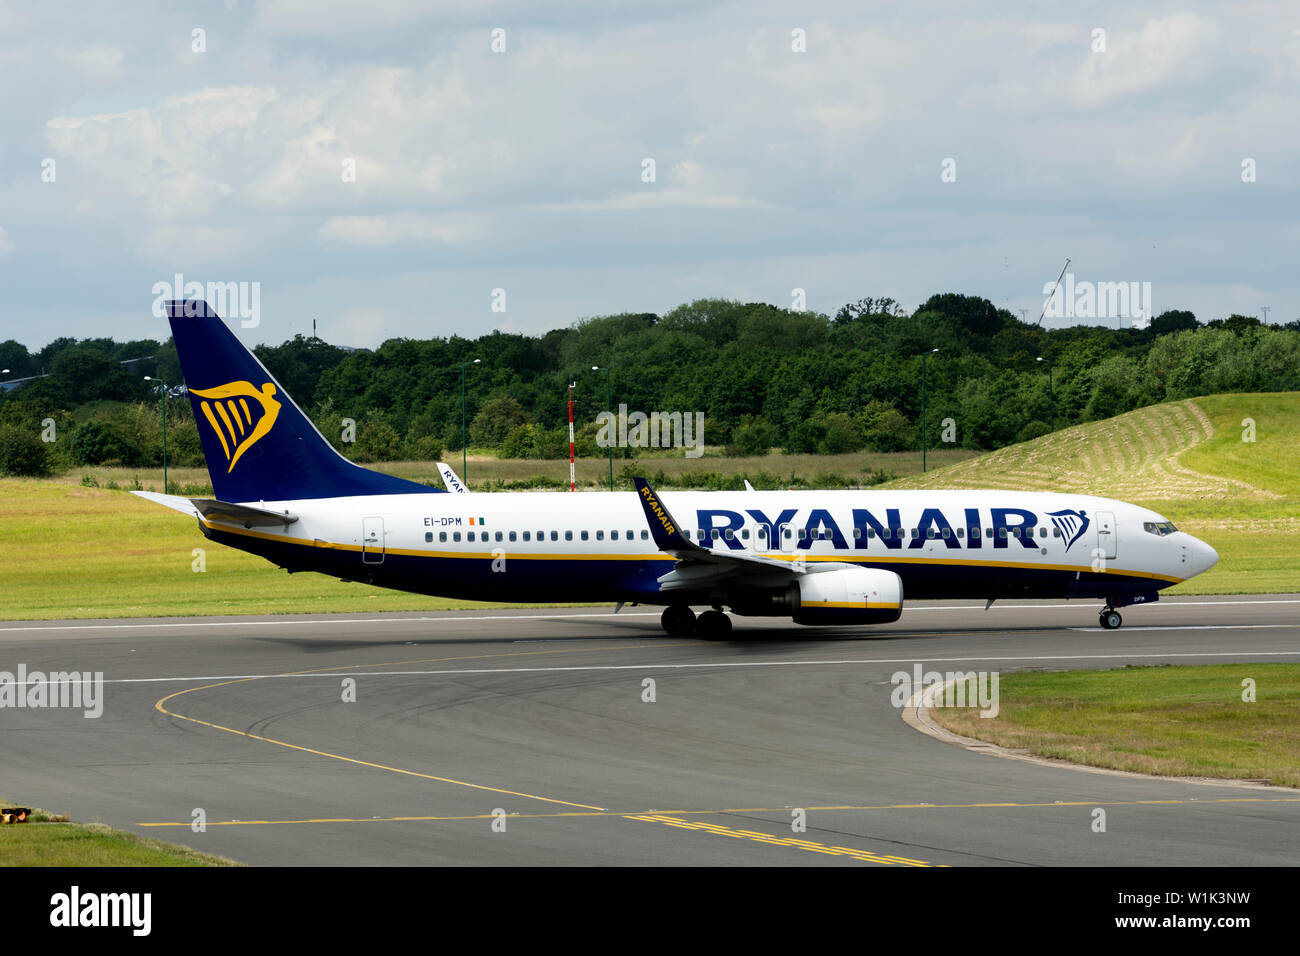 Ryanair Boeing 737-8comme à l'aéroport de Birmingham, UK (AE-DPM) Banque D'Images